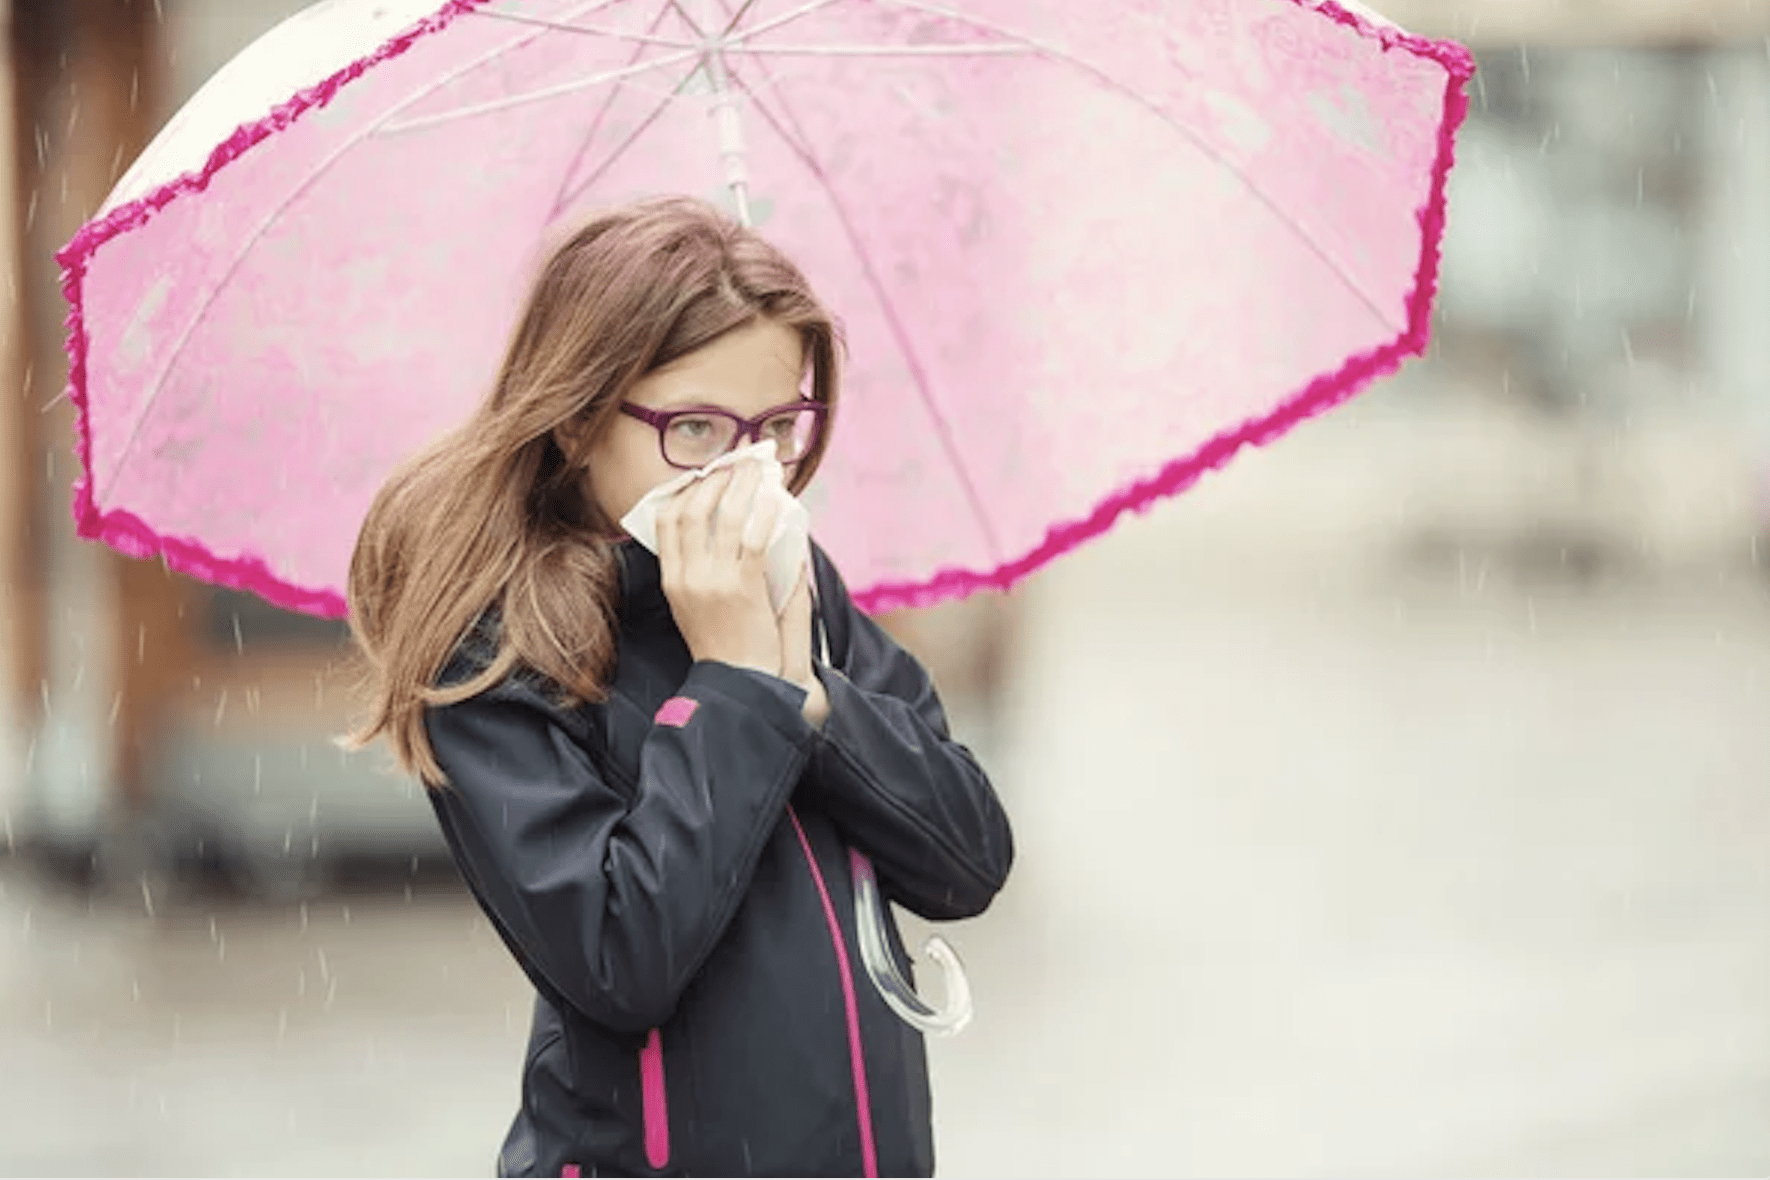 Lluvias: un factor negativo para quienes sufren de alergias